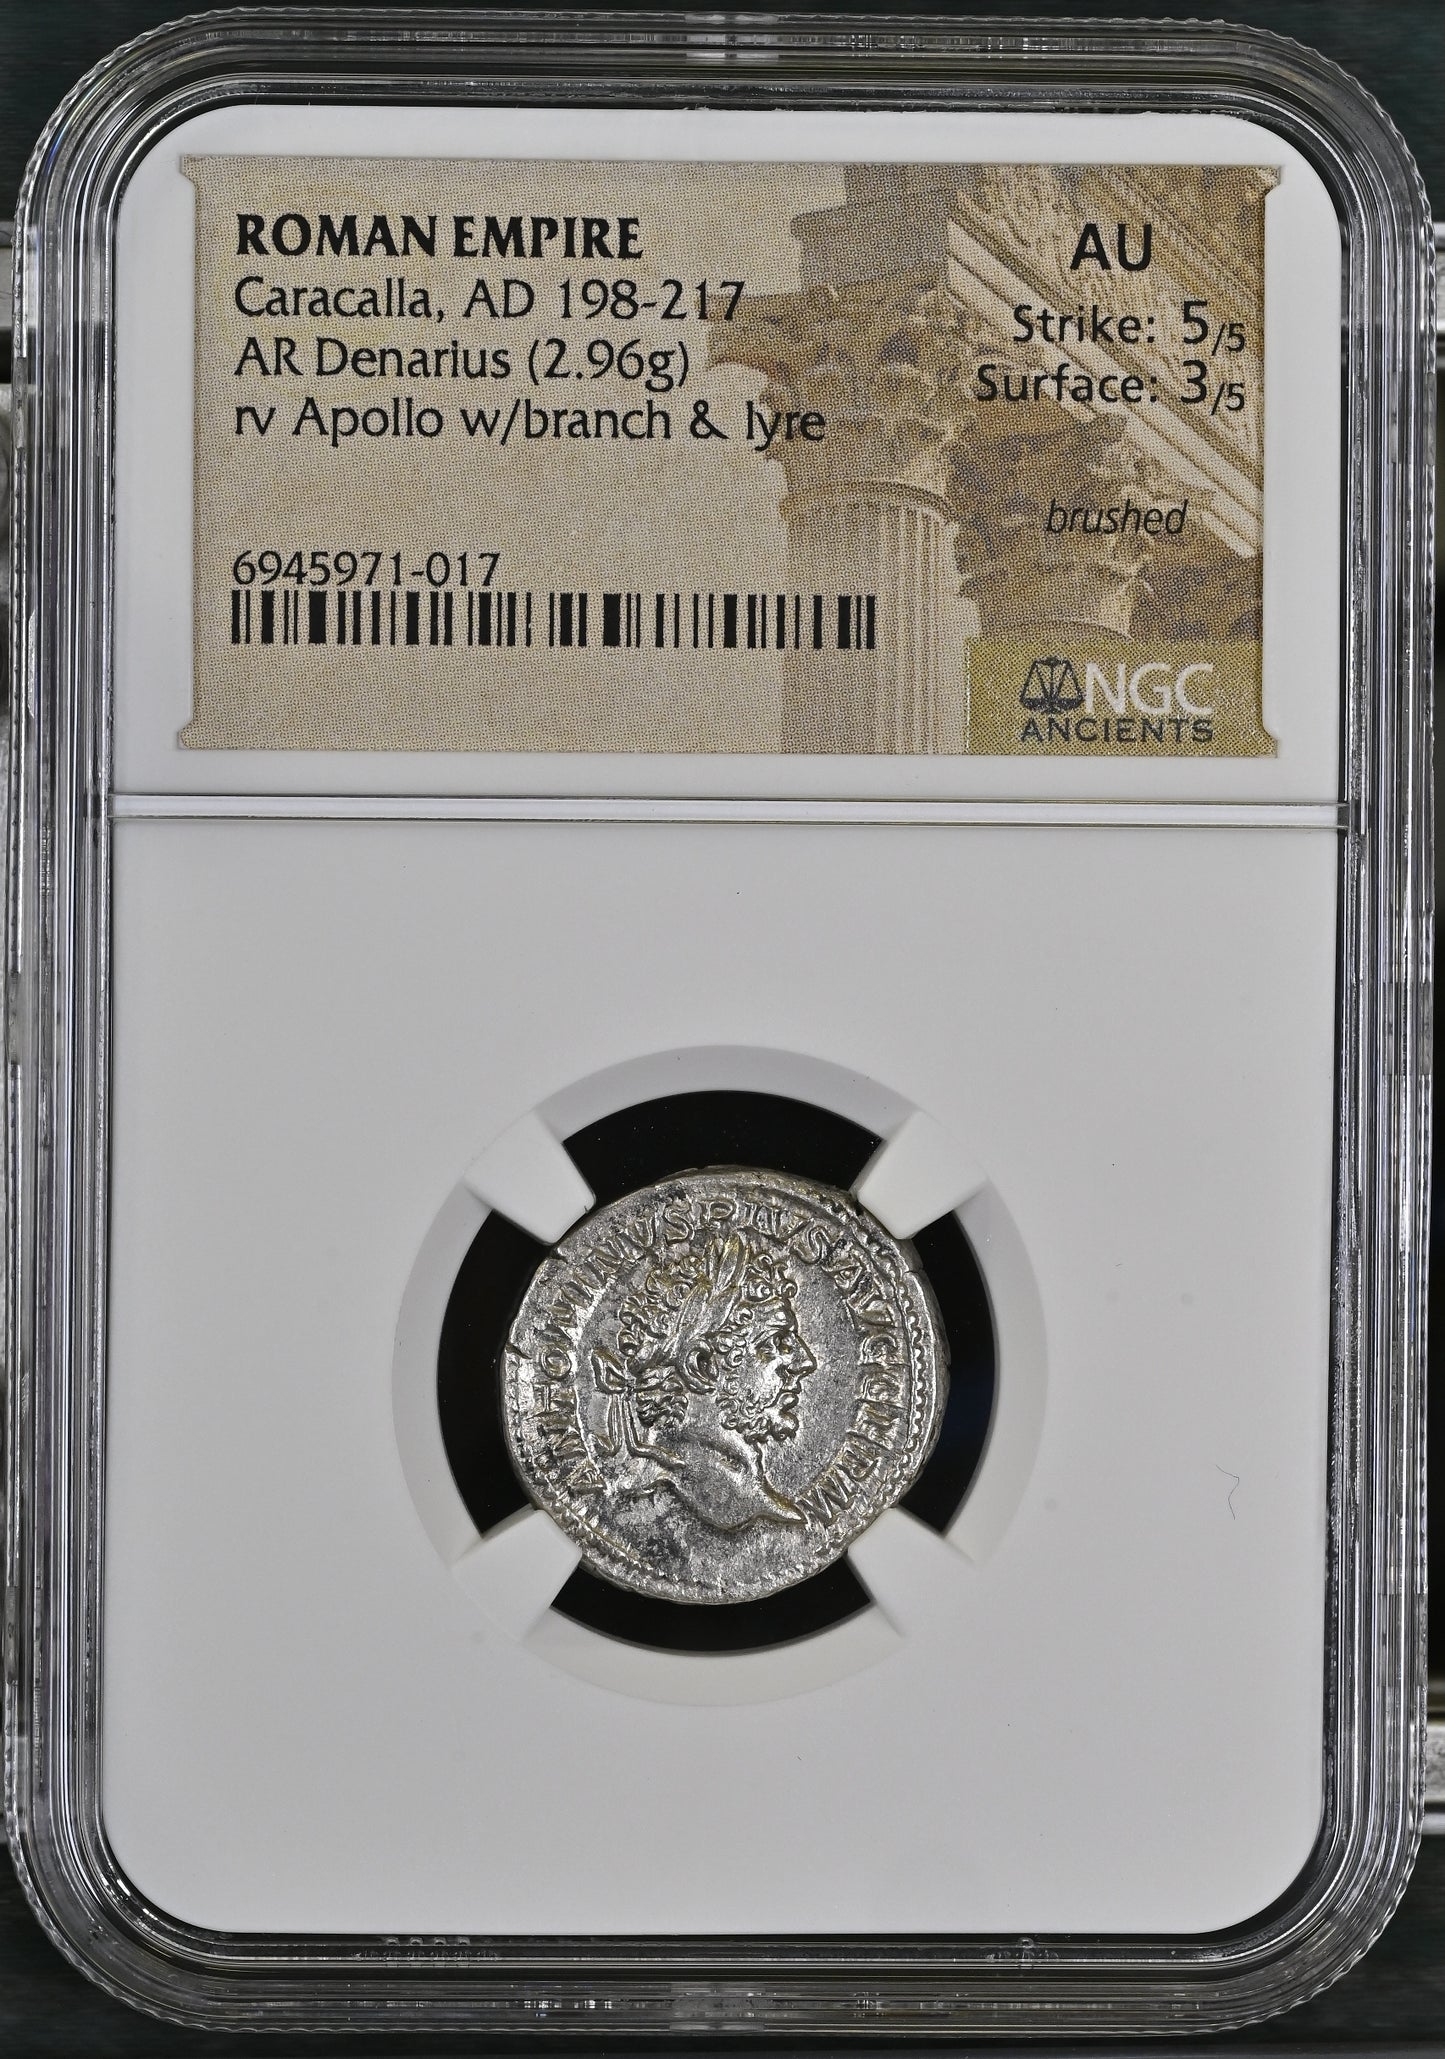 Roman Empire - Caracalla - Silver Denarius - NGC AU - RIC:238a